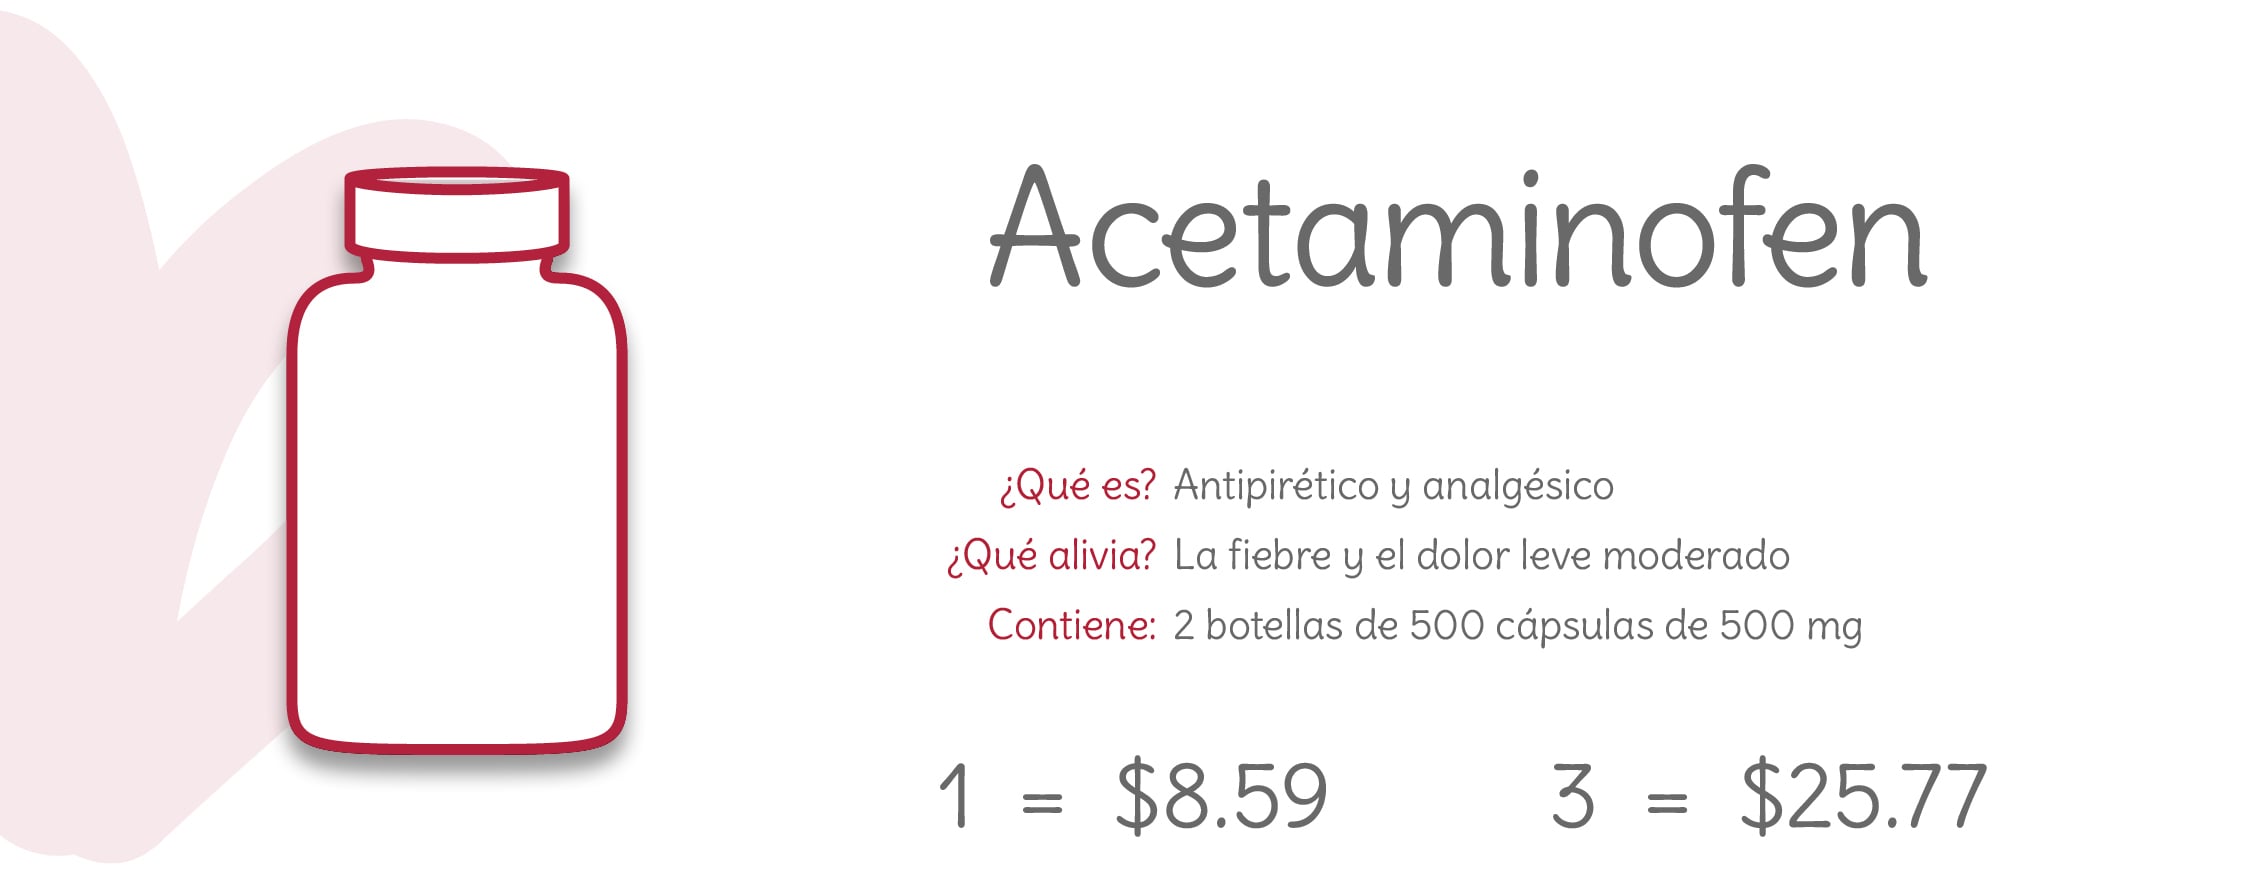 4_Acetaminofen